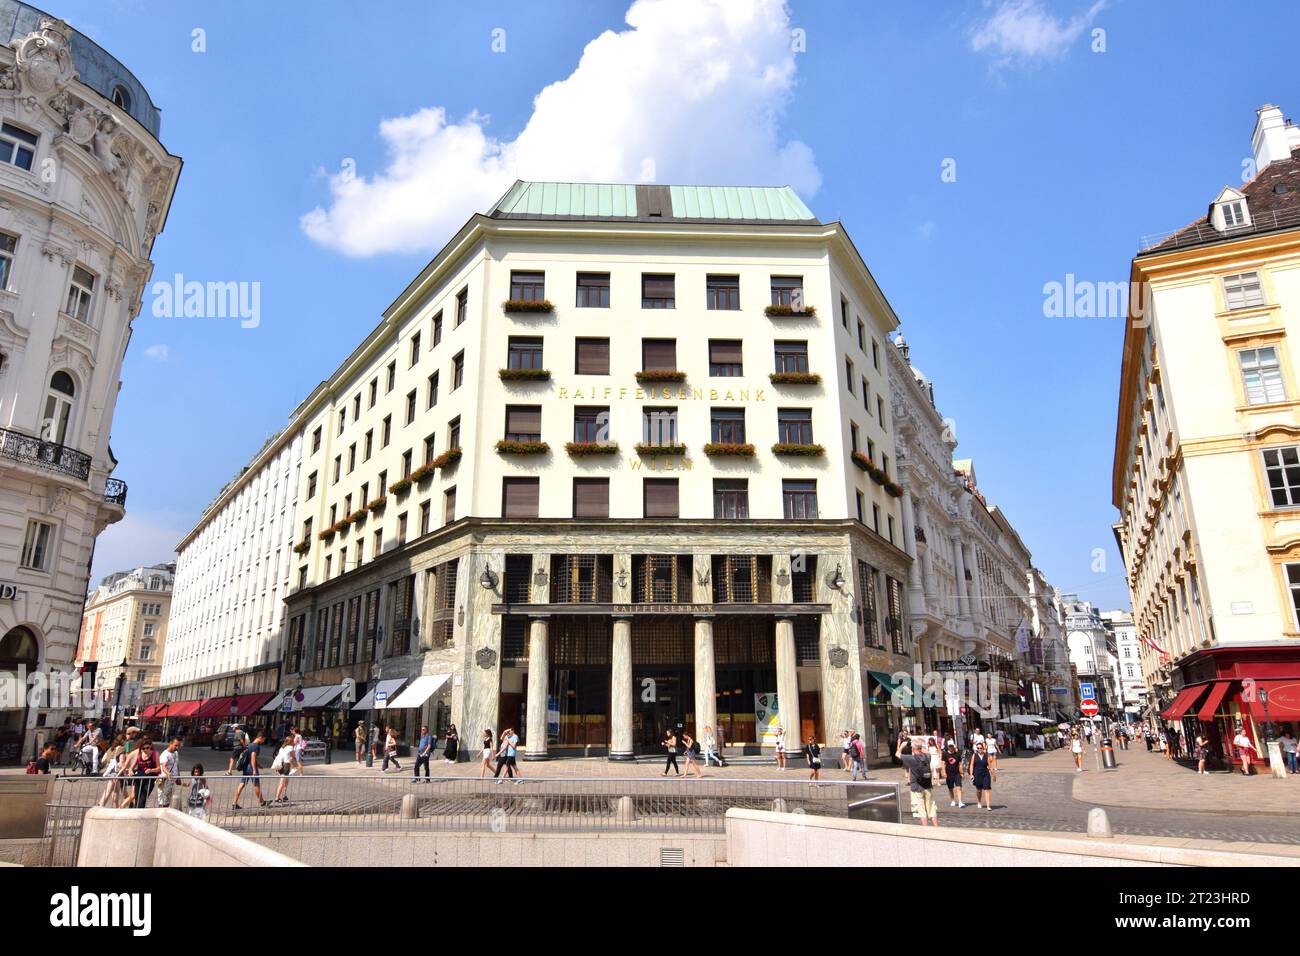 VIENNA, AUSTRIA - 8 AGOSTO 2018: "Looshaus" a Michaelerplatz. Progettato dall'architetto austriaco Adolf Loos nel 1909. Esempio di modernismo viennese. Foto Stock